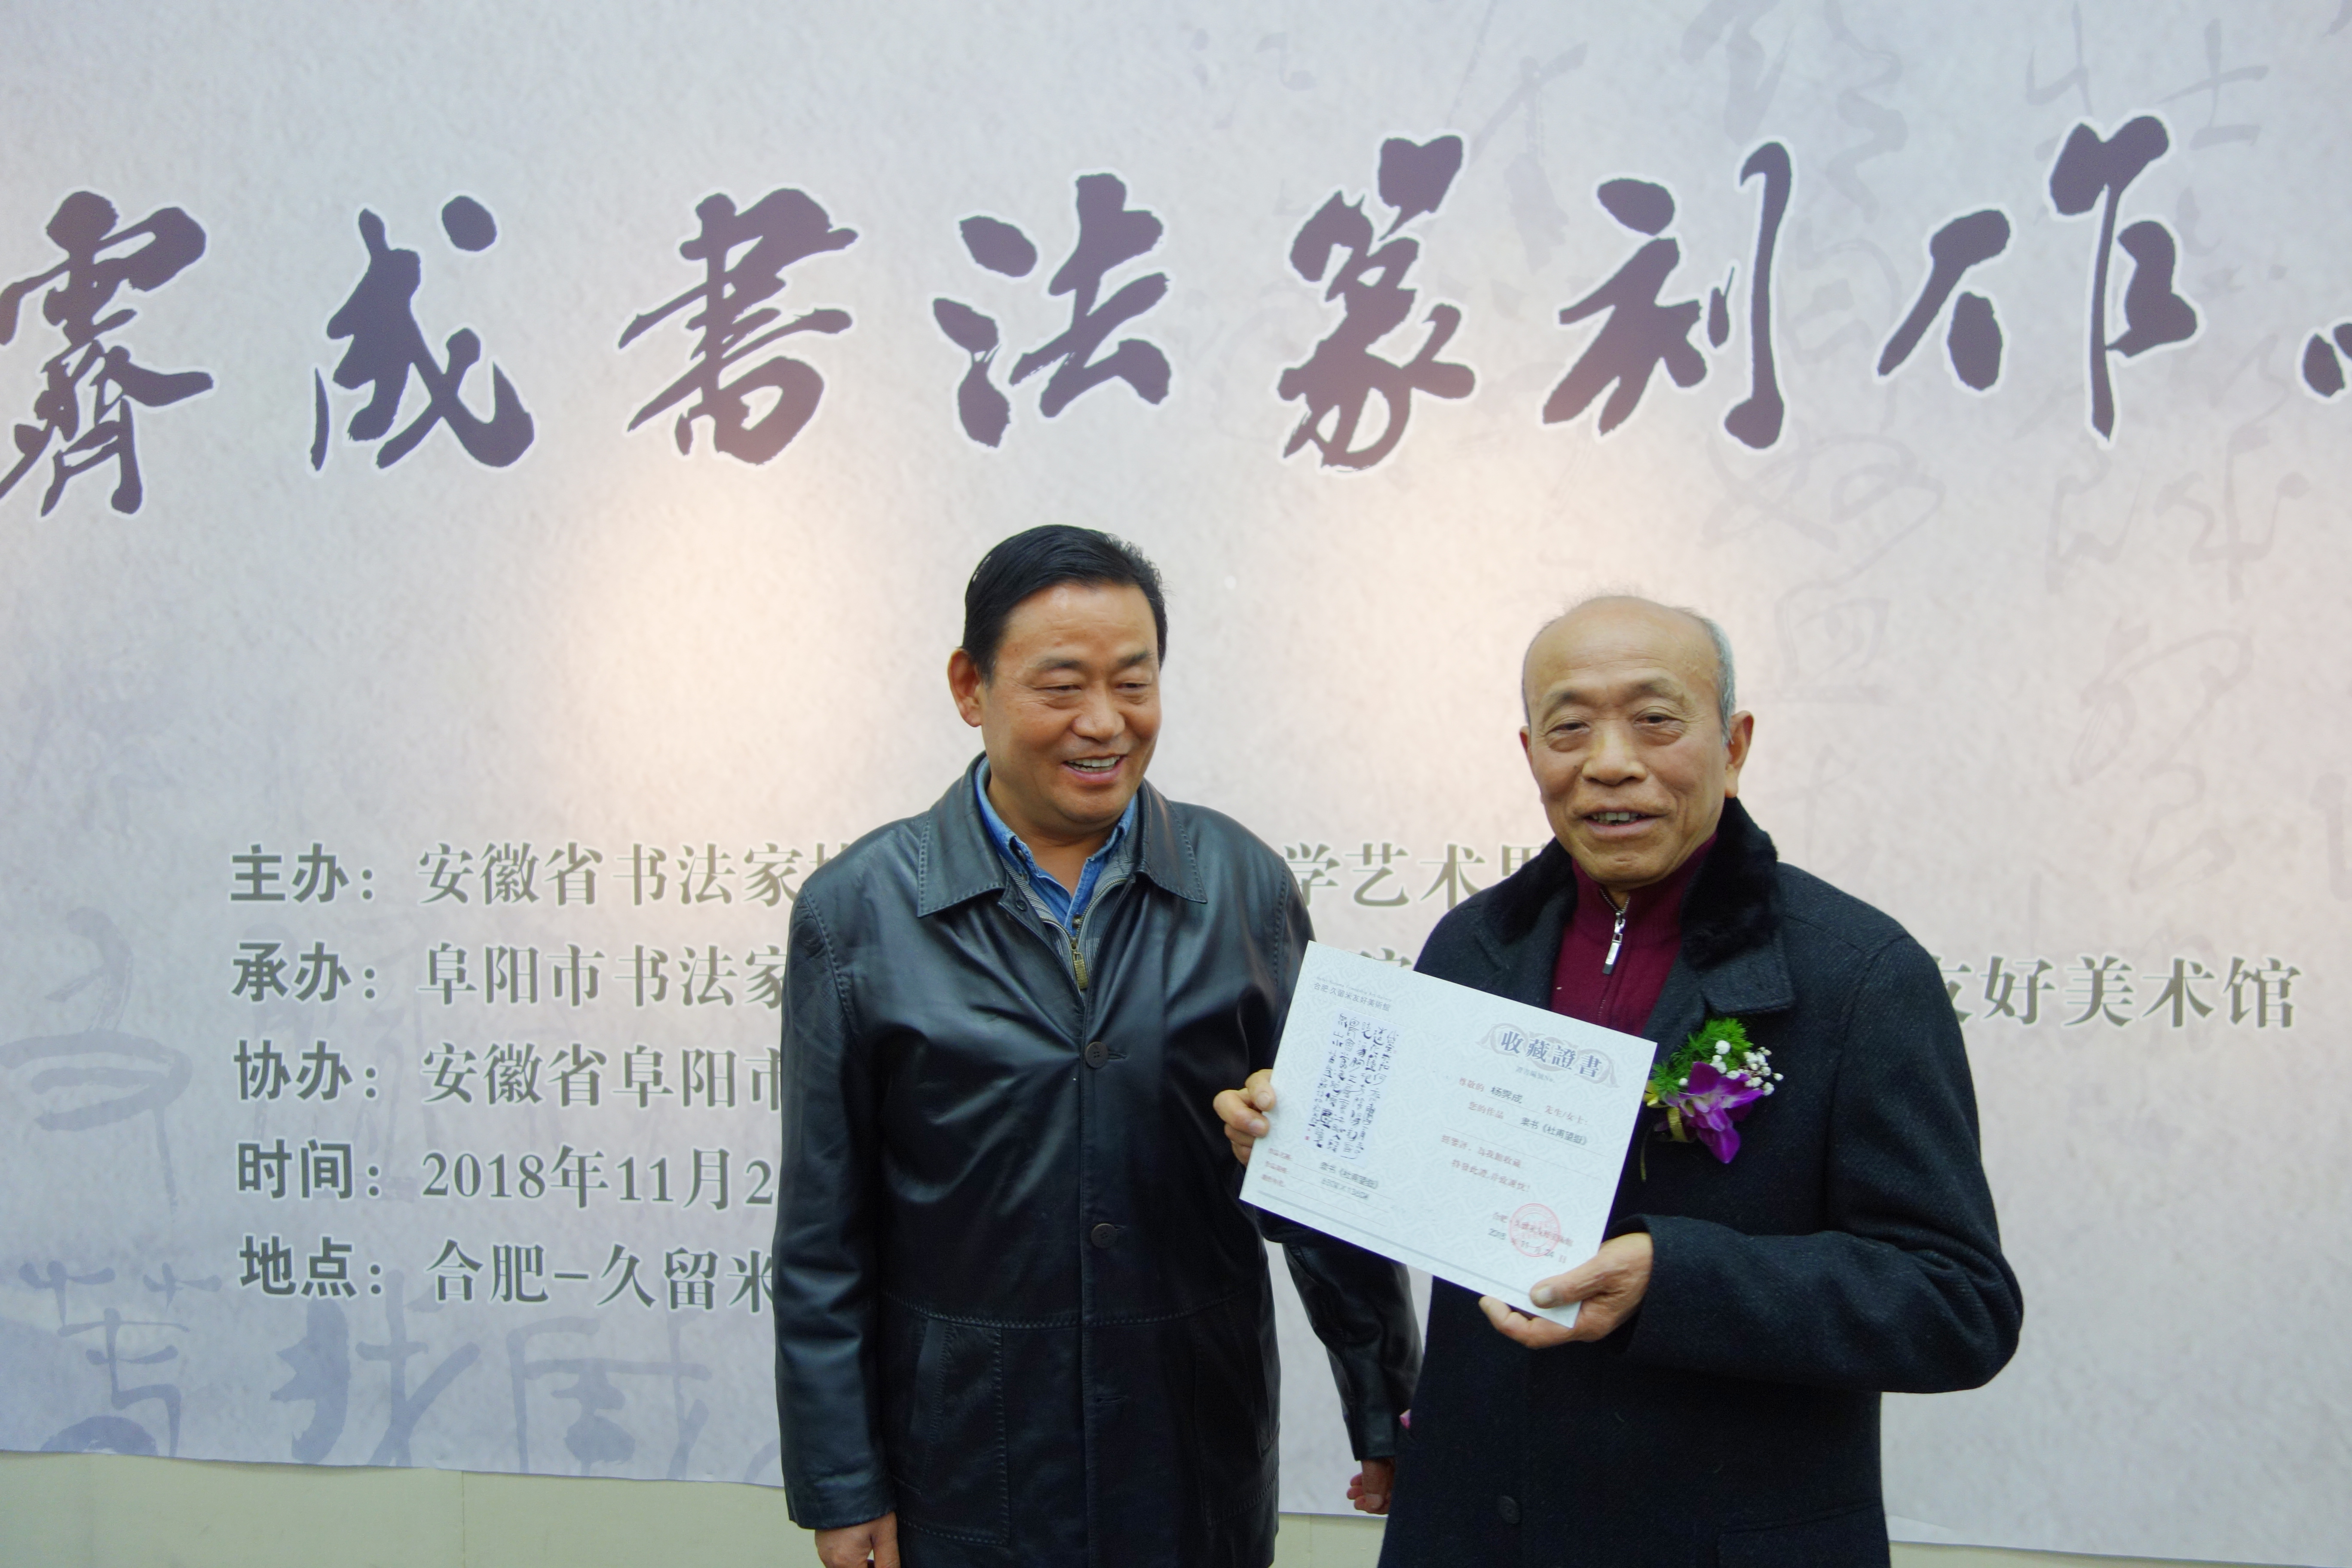 久留米美术馆向杨霁成先生颁发作品永久收藏证书